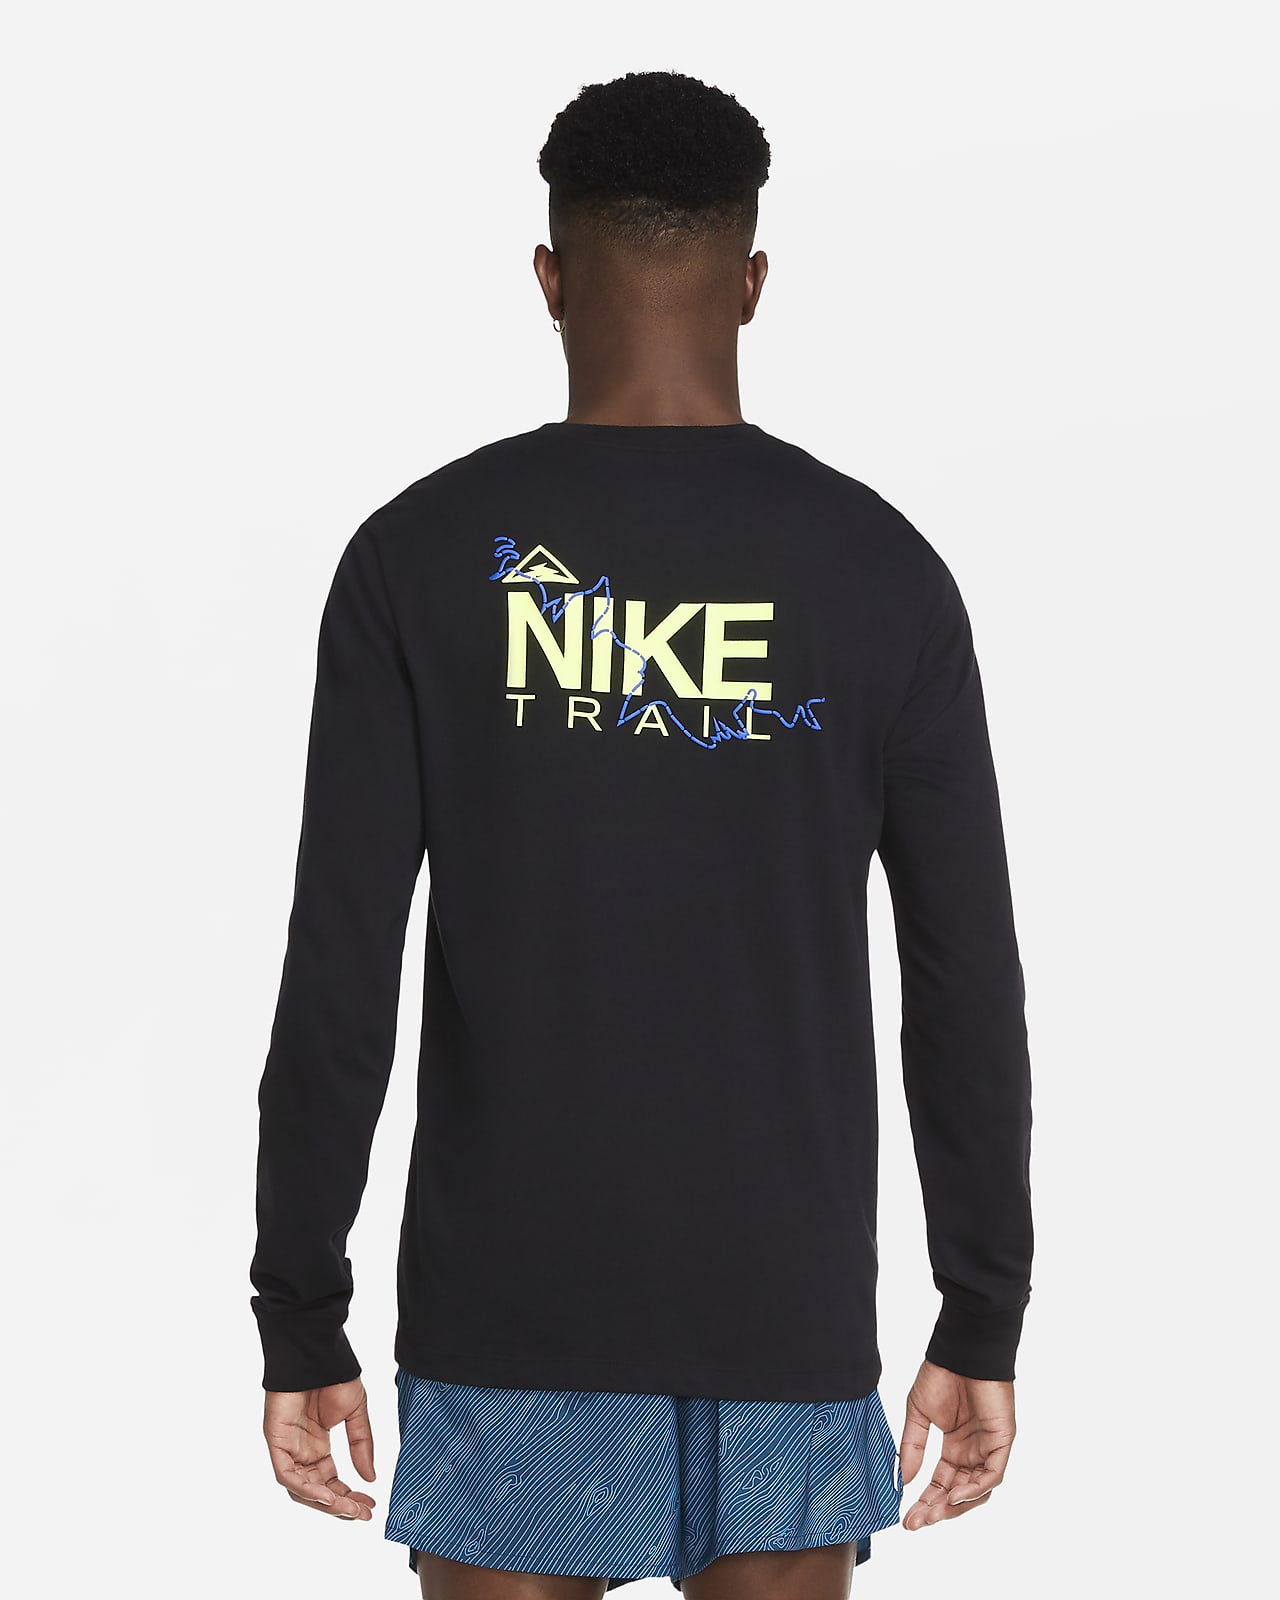 nike trail running sweatshirt